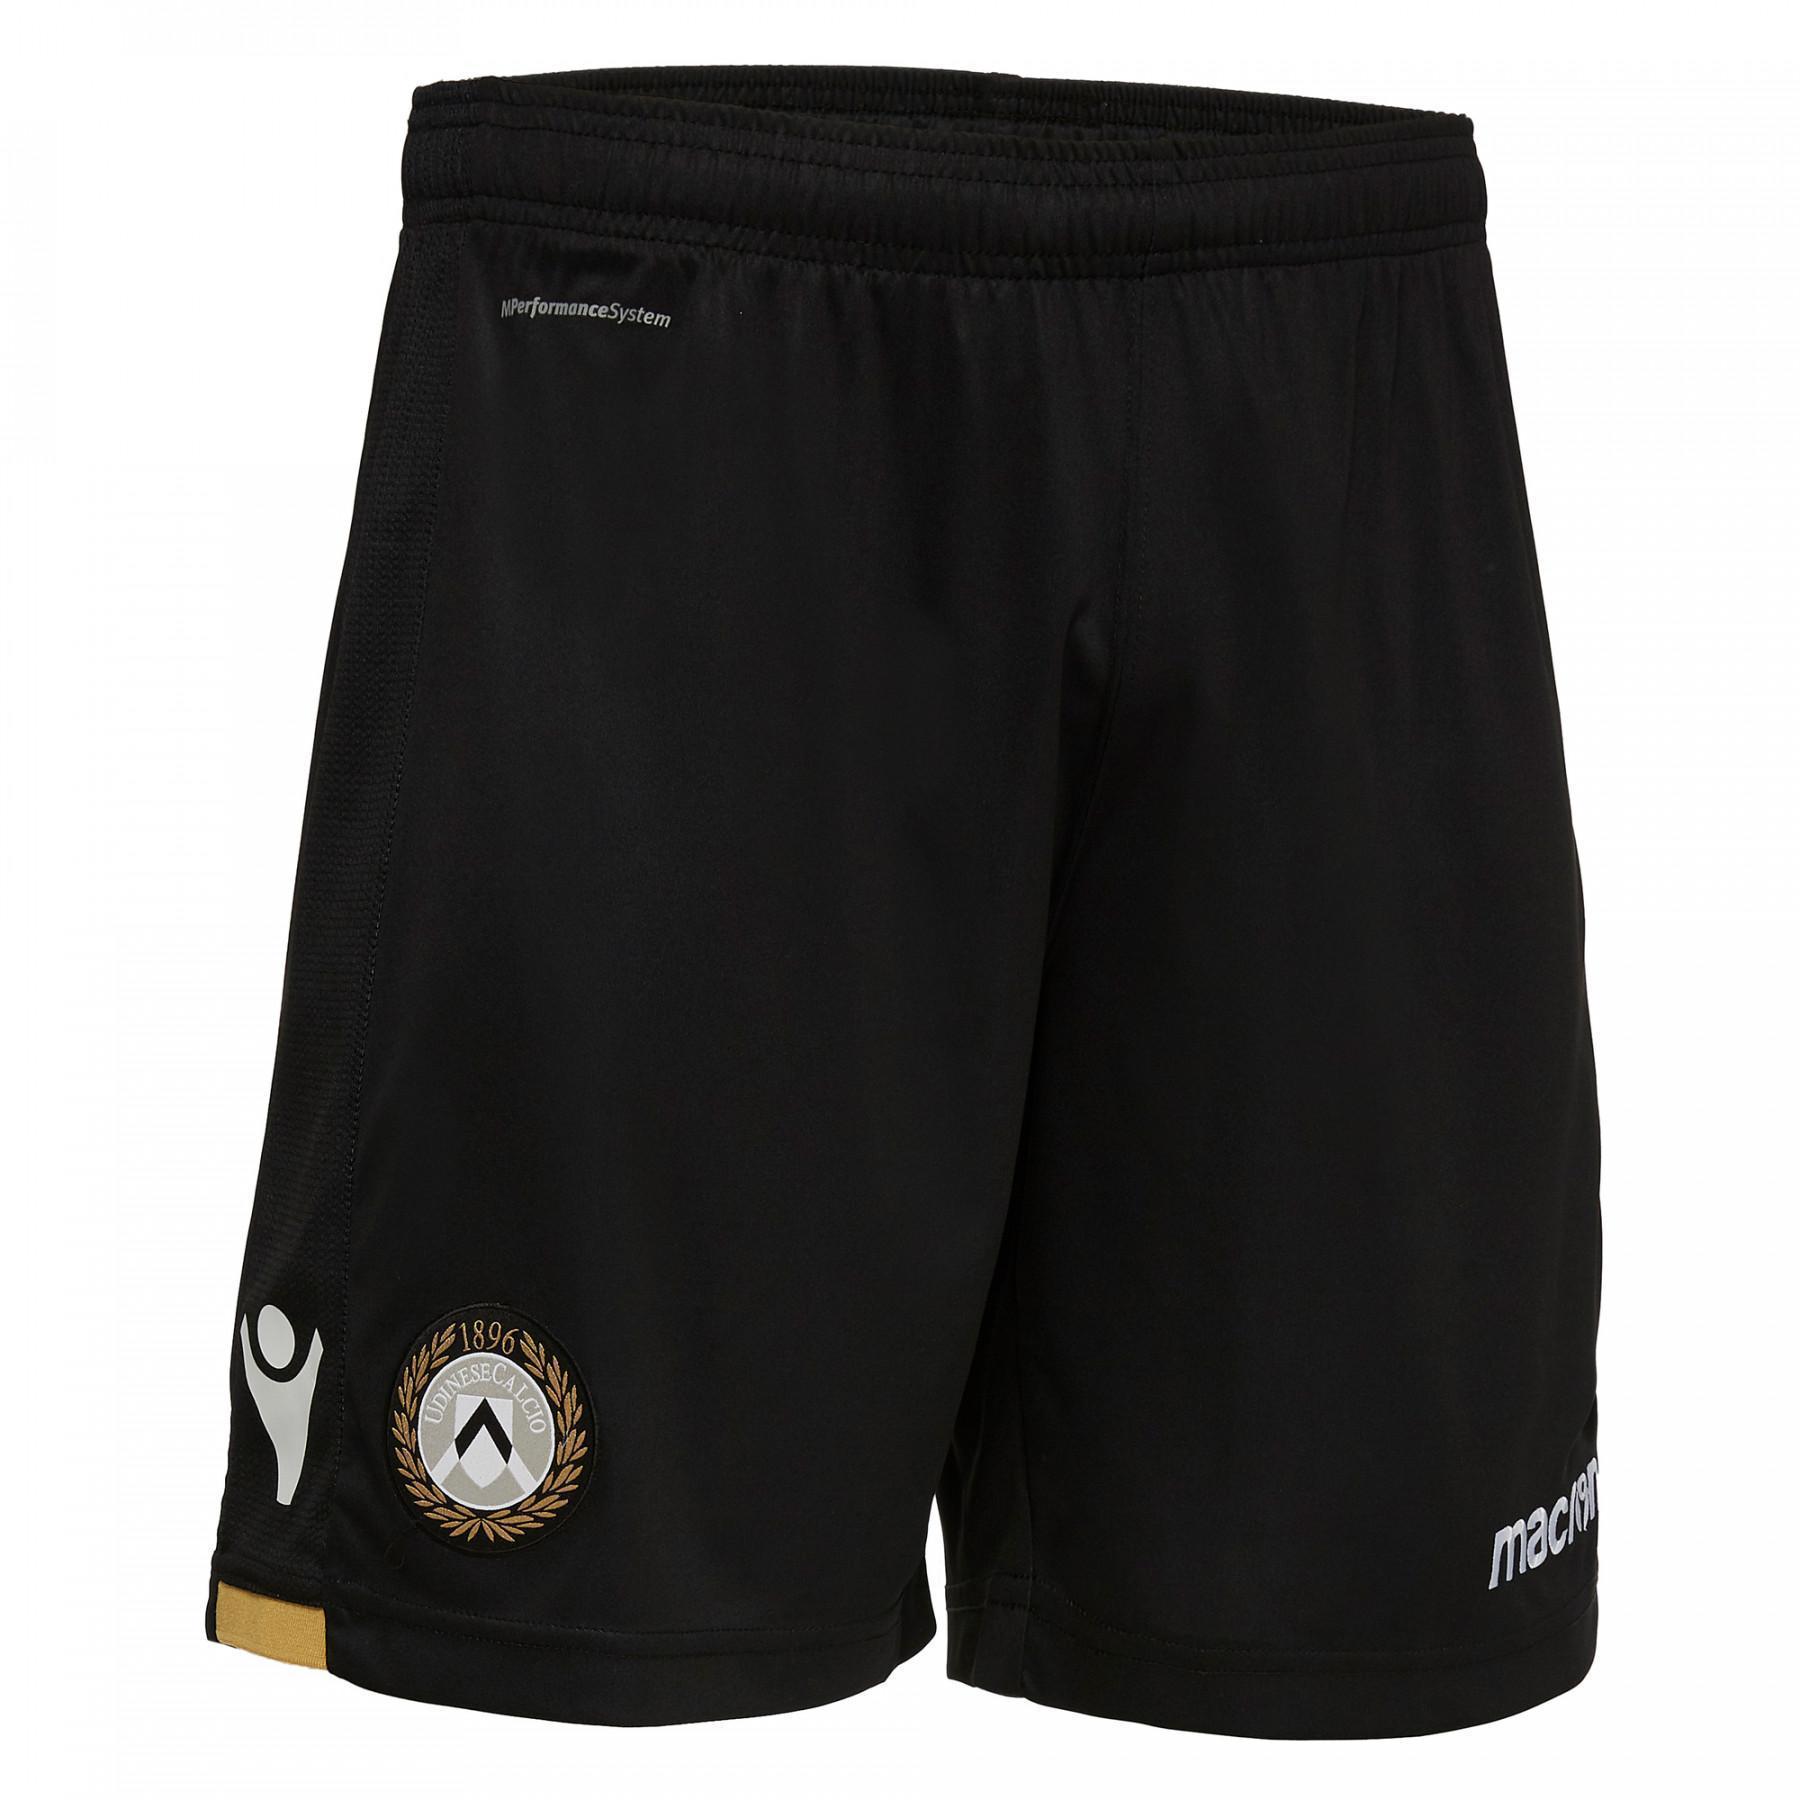 Pantalones cortos para el hogar Udinese 2018/19